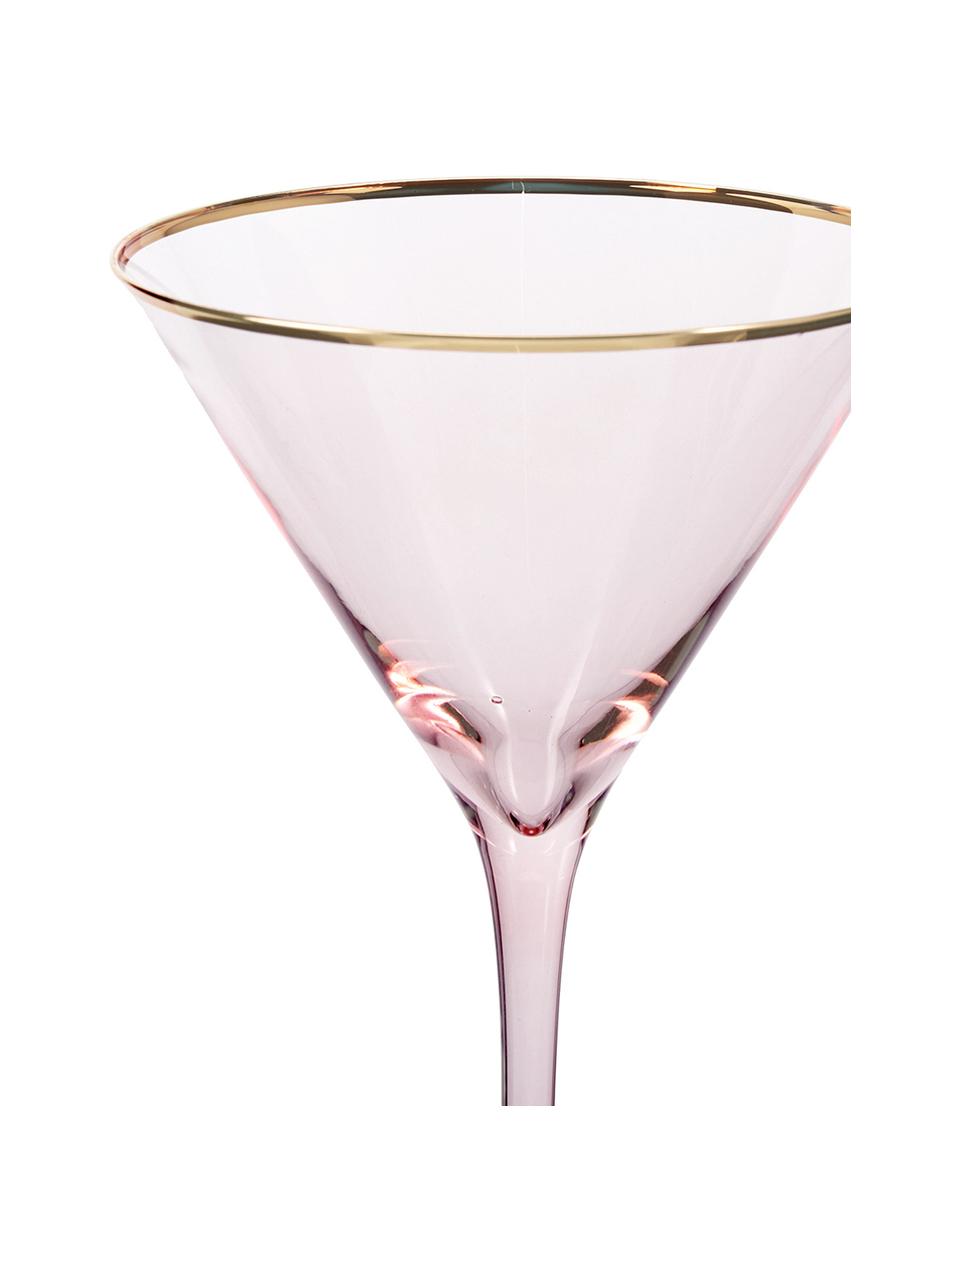 Copas martini Chloe, 4 uds., Vidrio, Melocotón, Ø 12 x Al 19 cm